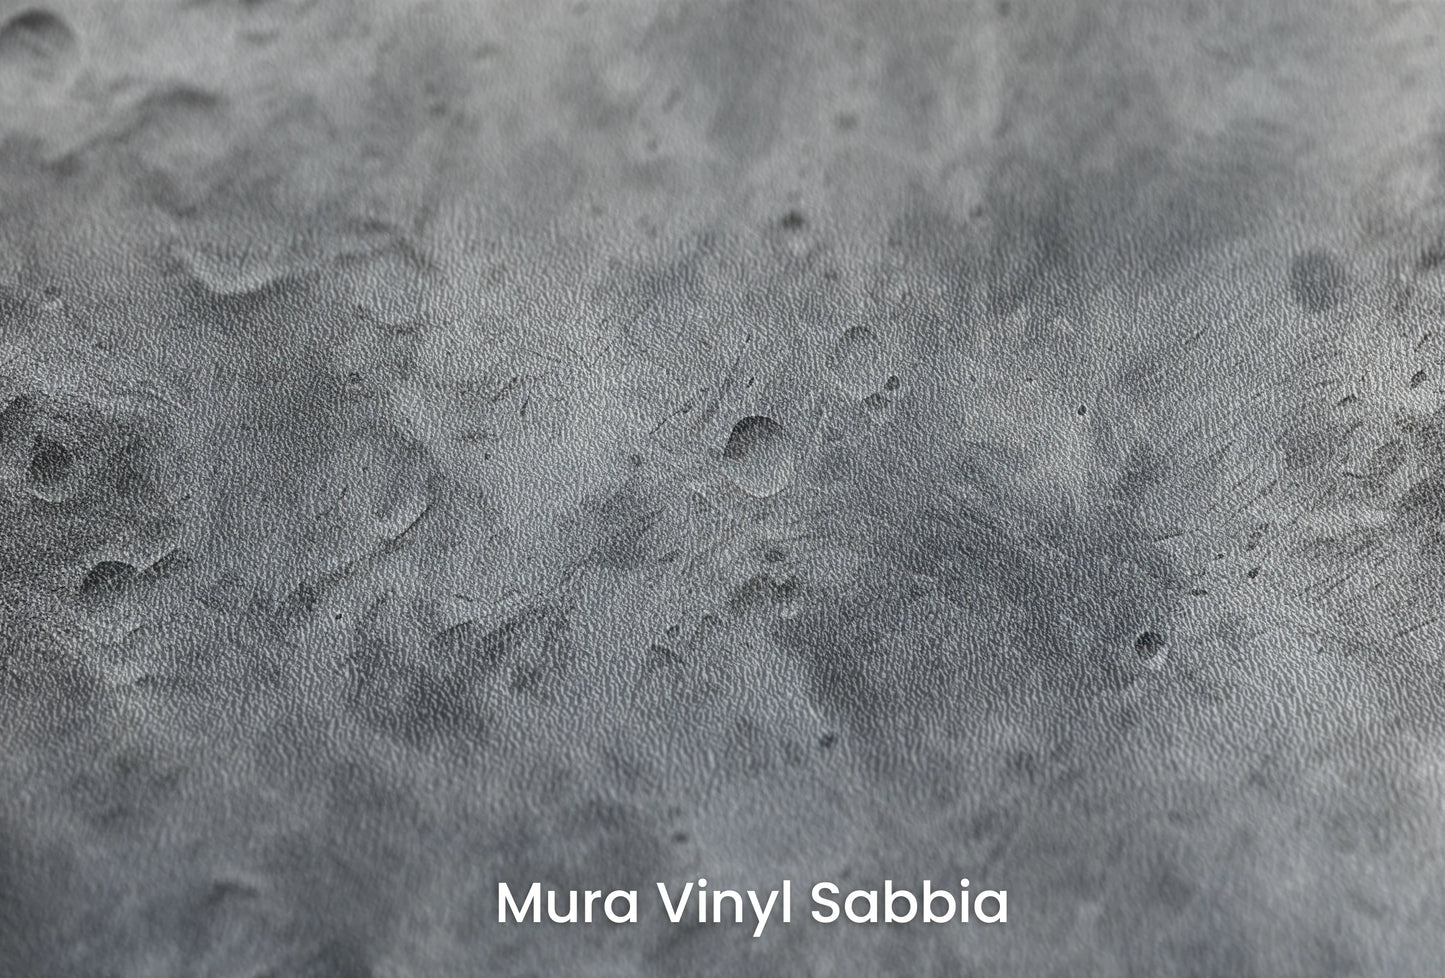 Zbliżenie na artystyczną fototapetę o nazwie Solar Fusion na podłożu Mura Vinyl Sabbia struktura grubego ziarna piasku.